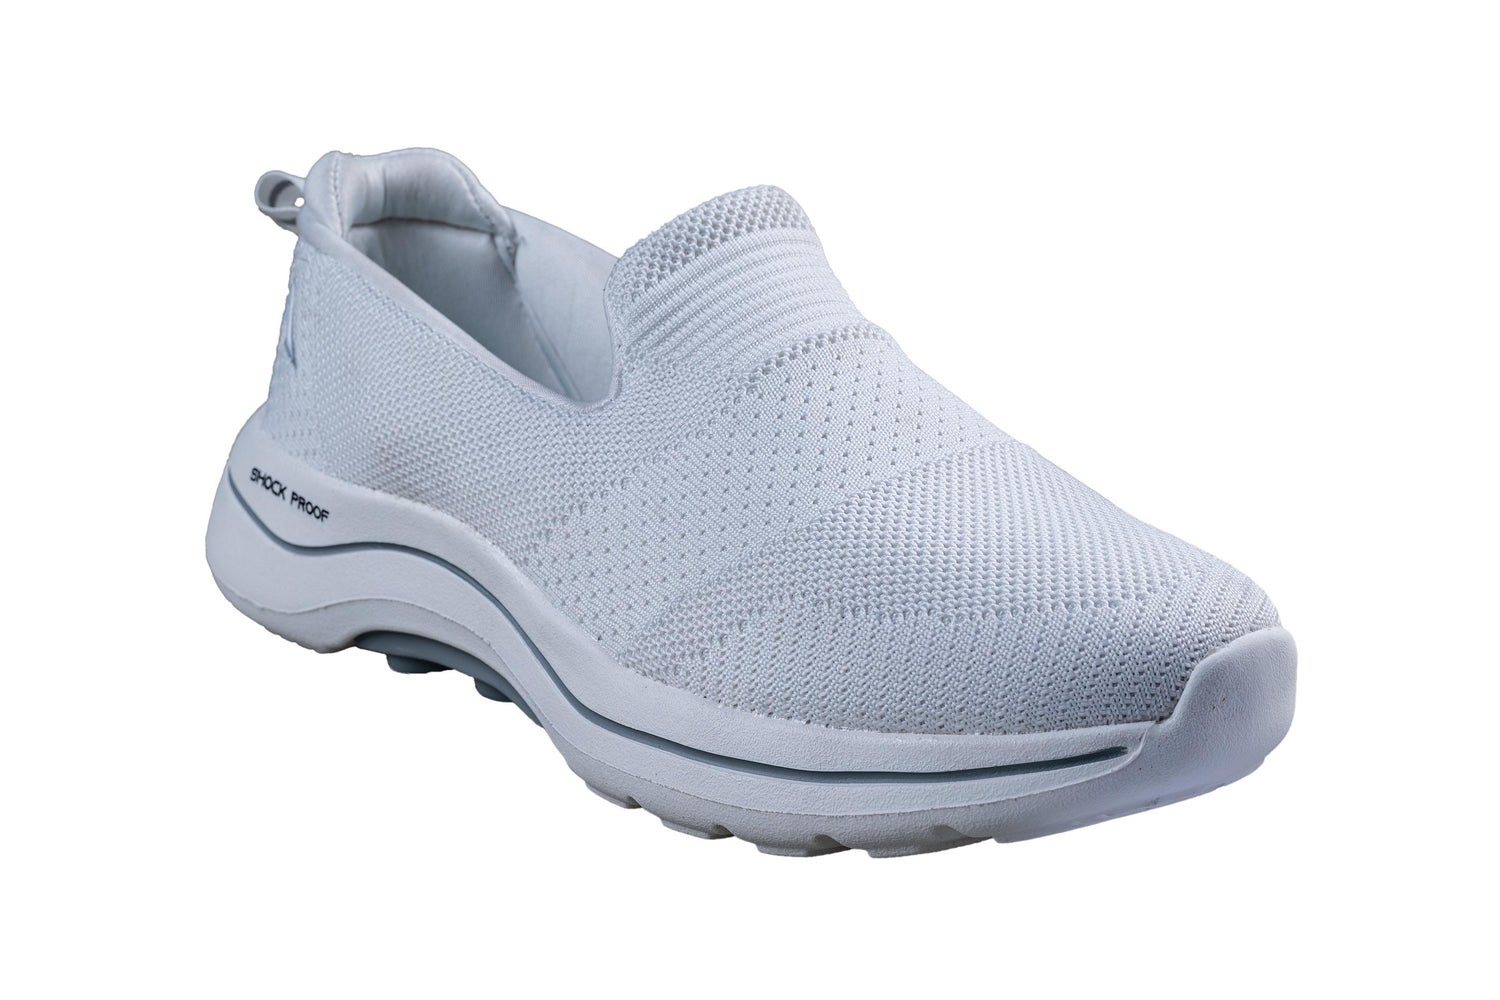 Abros Gents White / L. Grey Sports Shoe